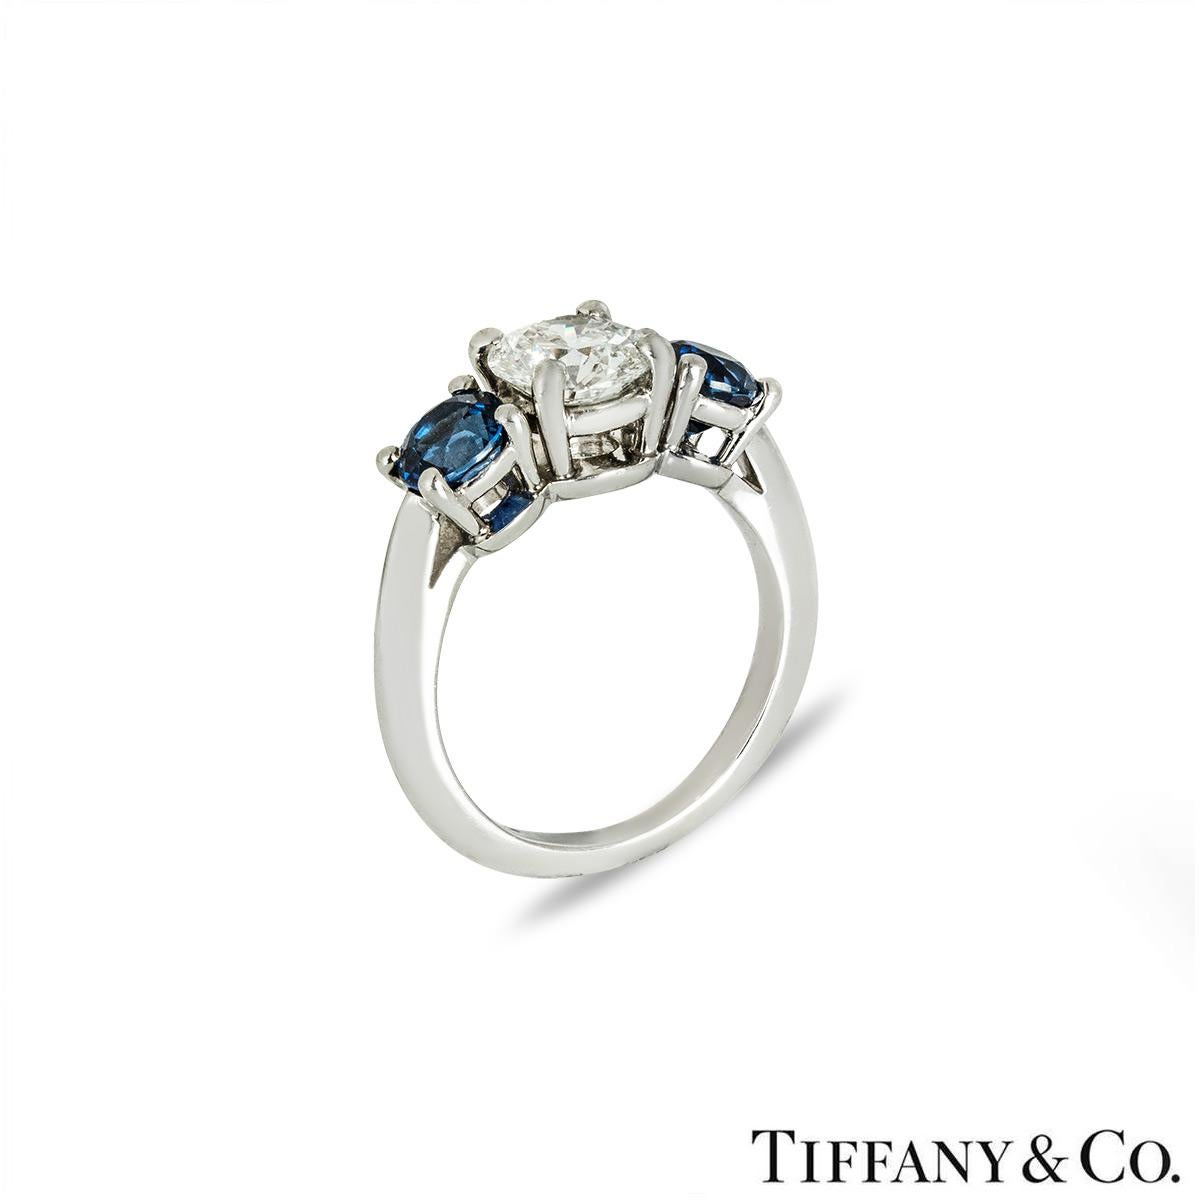 Une superbe bague en platine avec diamant et saphir de Tiffany & Co. La bague se compose d'un diamant rond de taille brillant au centre et d'un saphir de chaque côté, le tout dans une monture à quatre griffes. Le diamant rond de taille brillant pèse